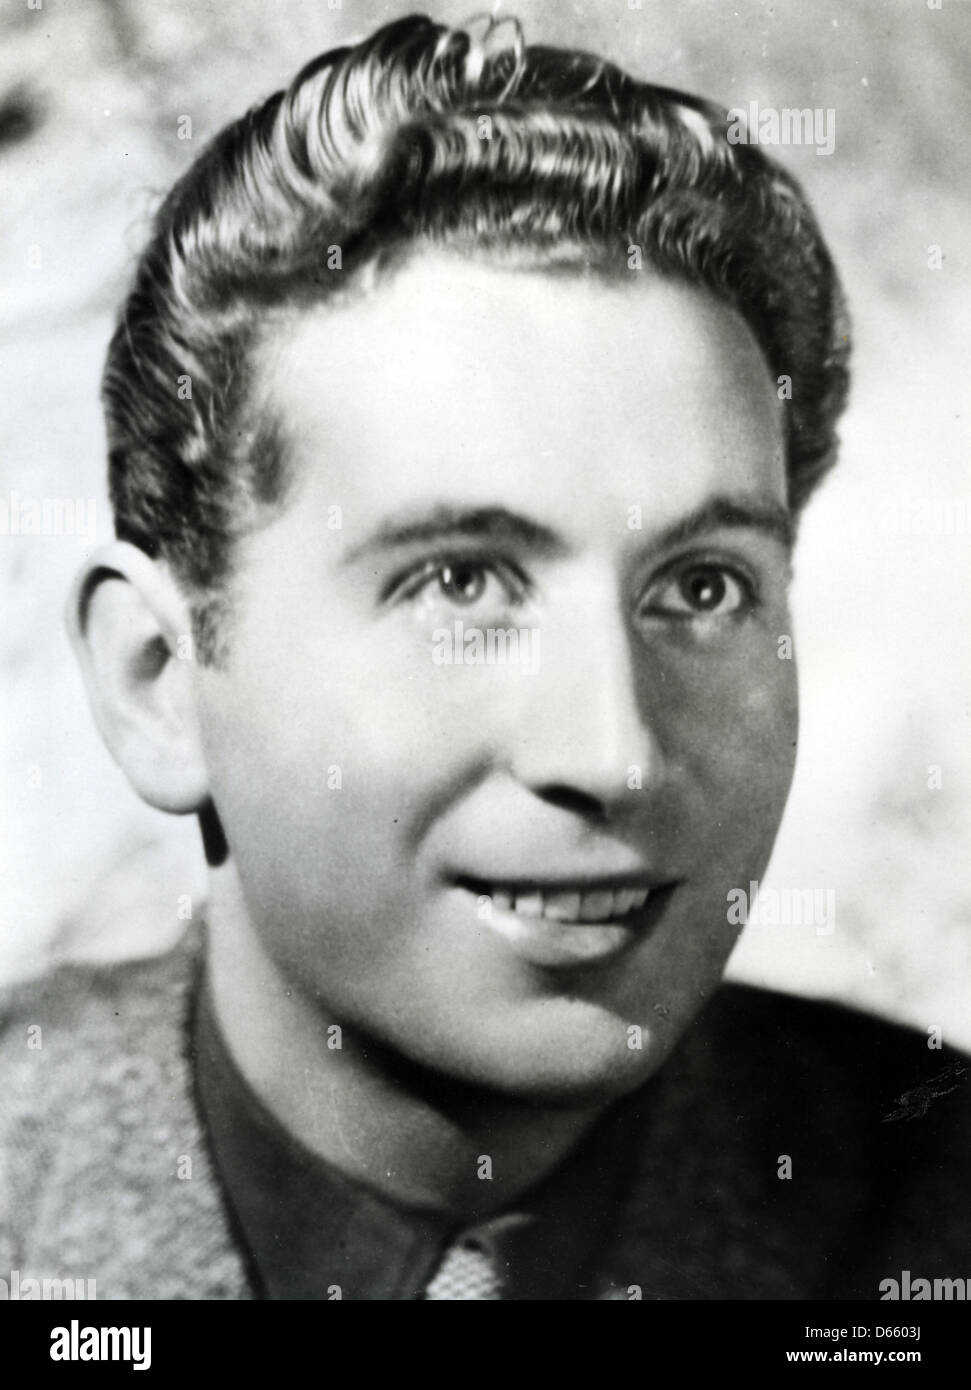 CHARLES TRENET (1913-2001) cantante y compositor francés Foto de stock